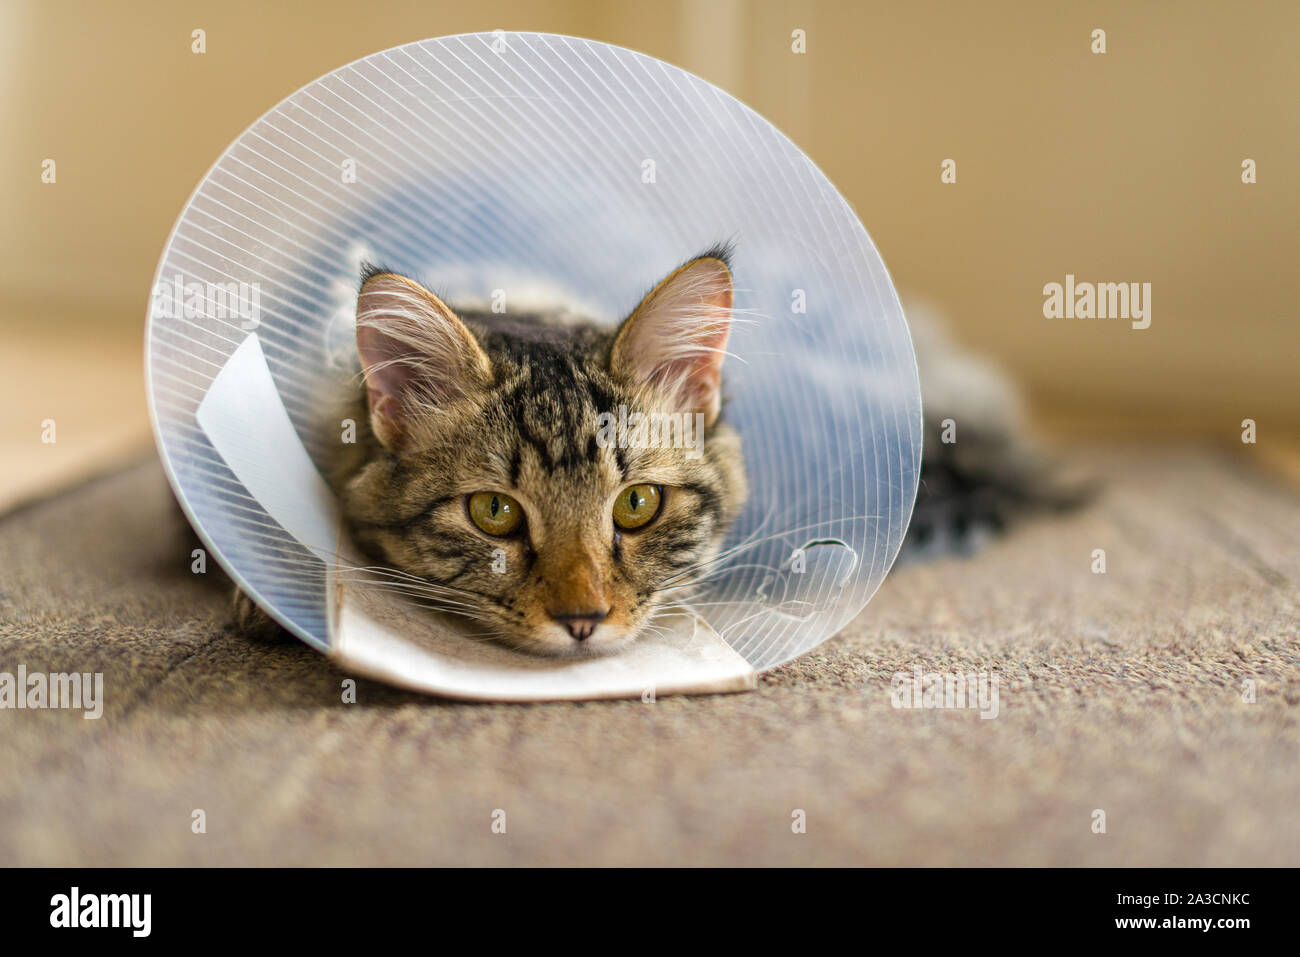 Un gatto domestico con un collare in plastica attorno al cono della sua testa dopo la chirurgia per impedire le operazioni di toletta. Spesso chiamato un cono della vergogna, Elizabethan collare. Foto Stock